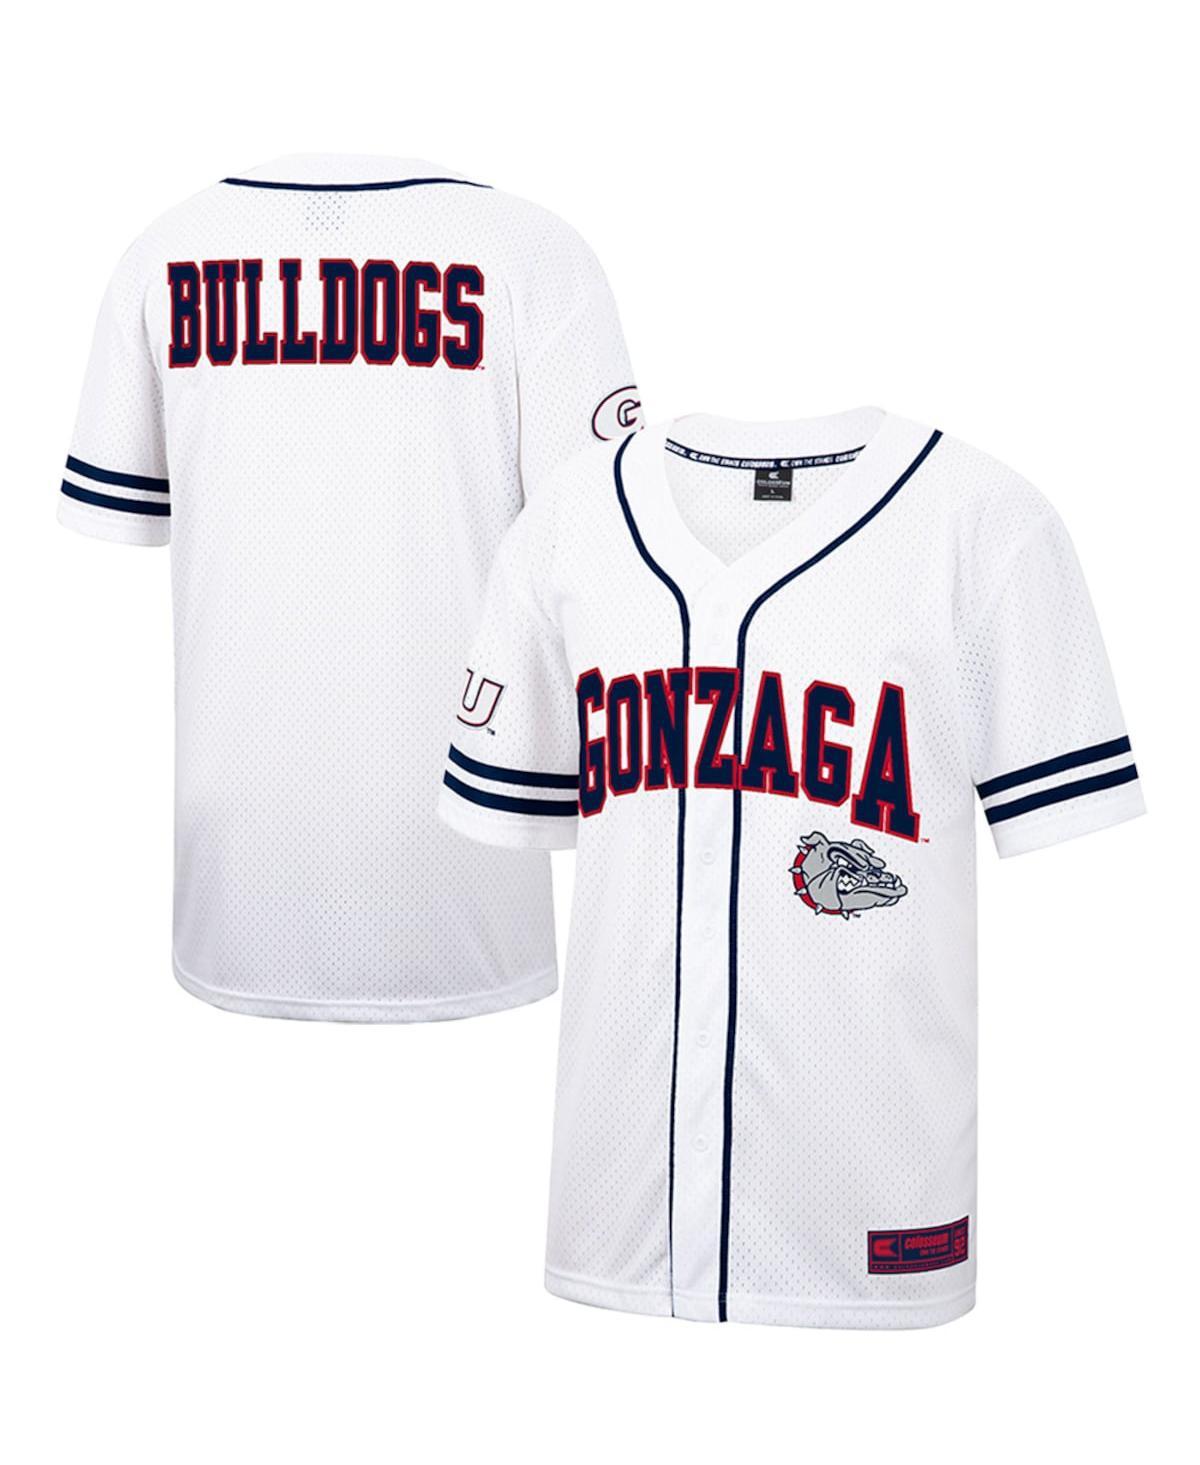 Gonzaga Jerseys, Gonzaga Bulldogs Uniforms